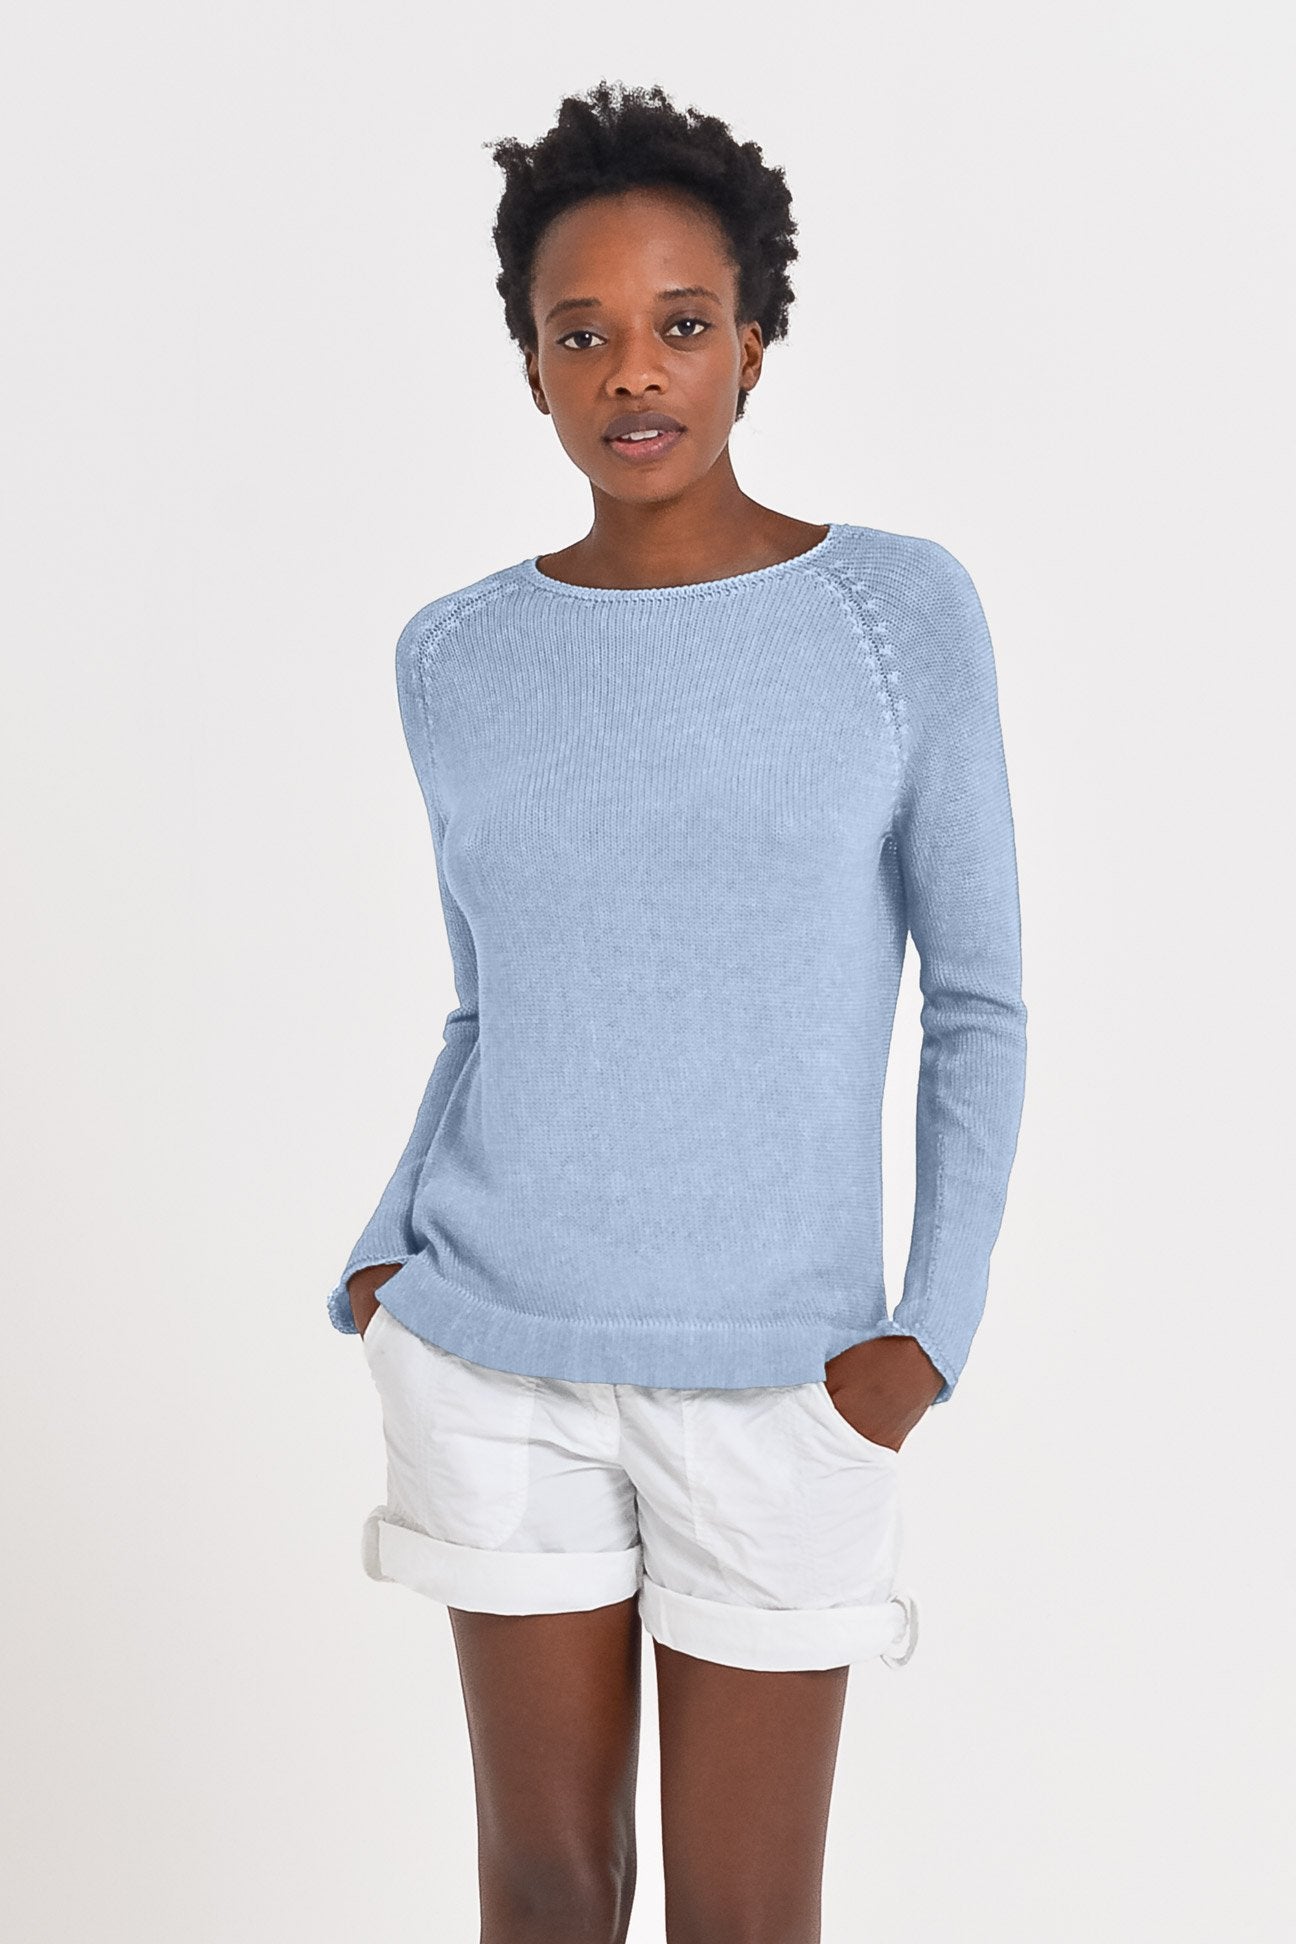 Cotton Cloud Pullover - Fiji - Sweaters